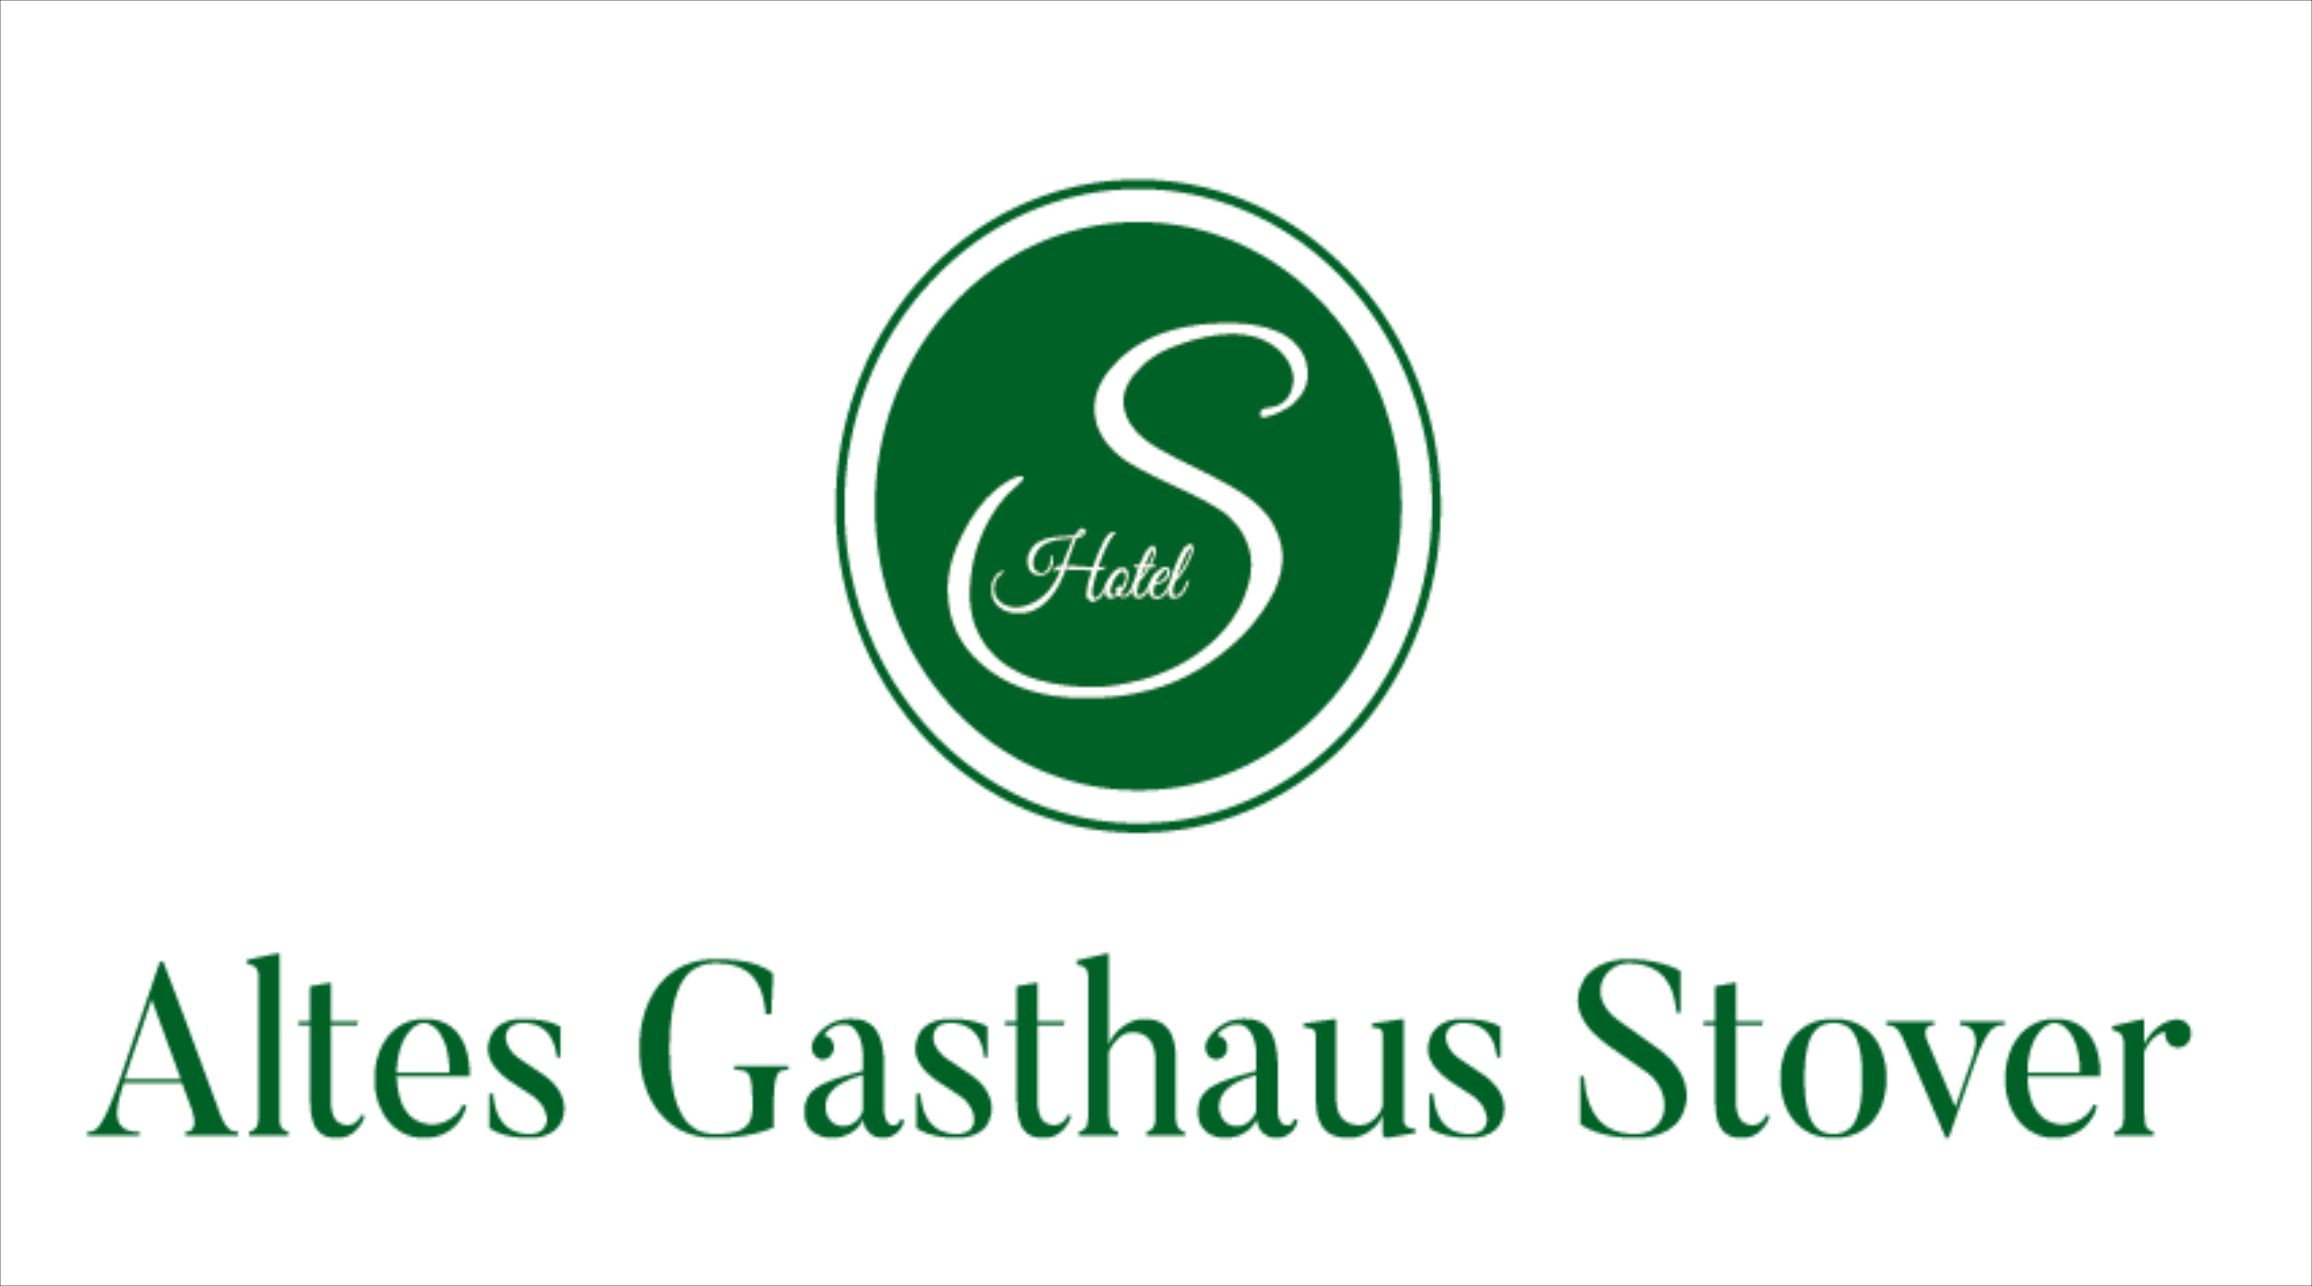 zum Bild:<br>Logo Altes Gasthaus Stover - Hotel.